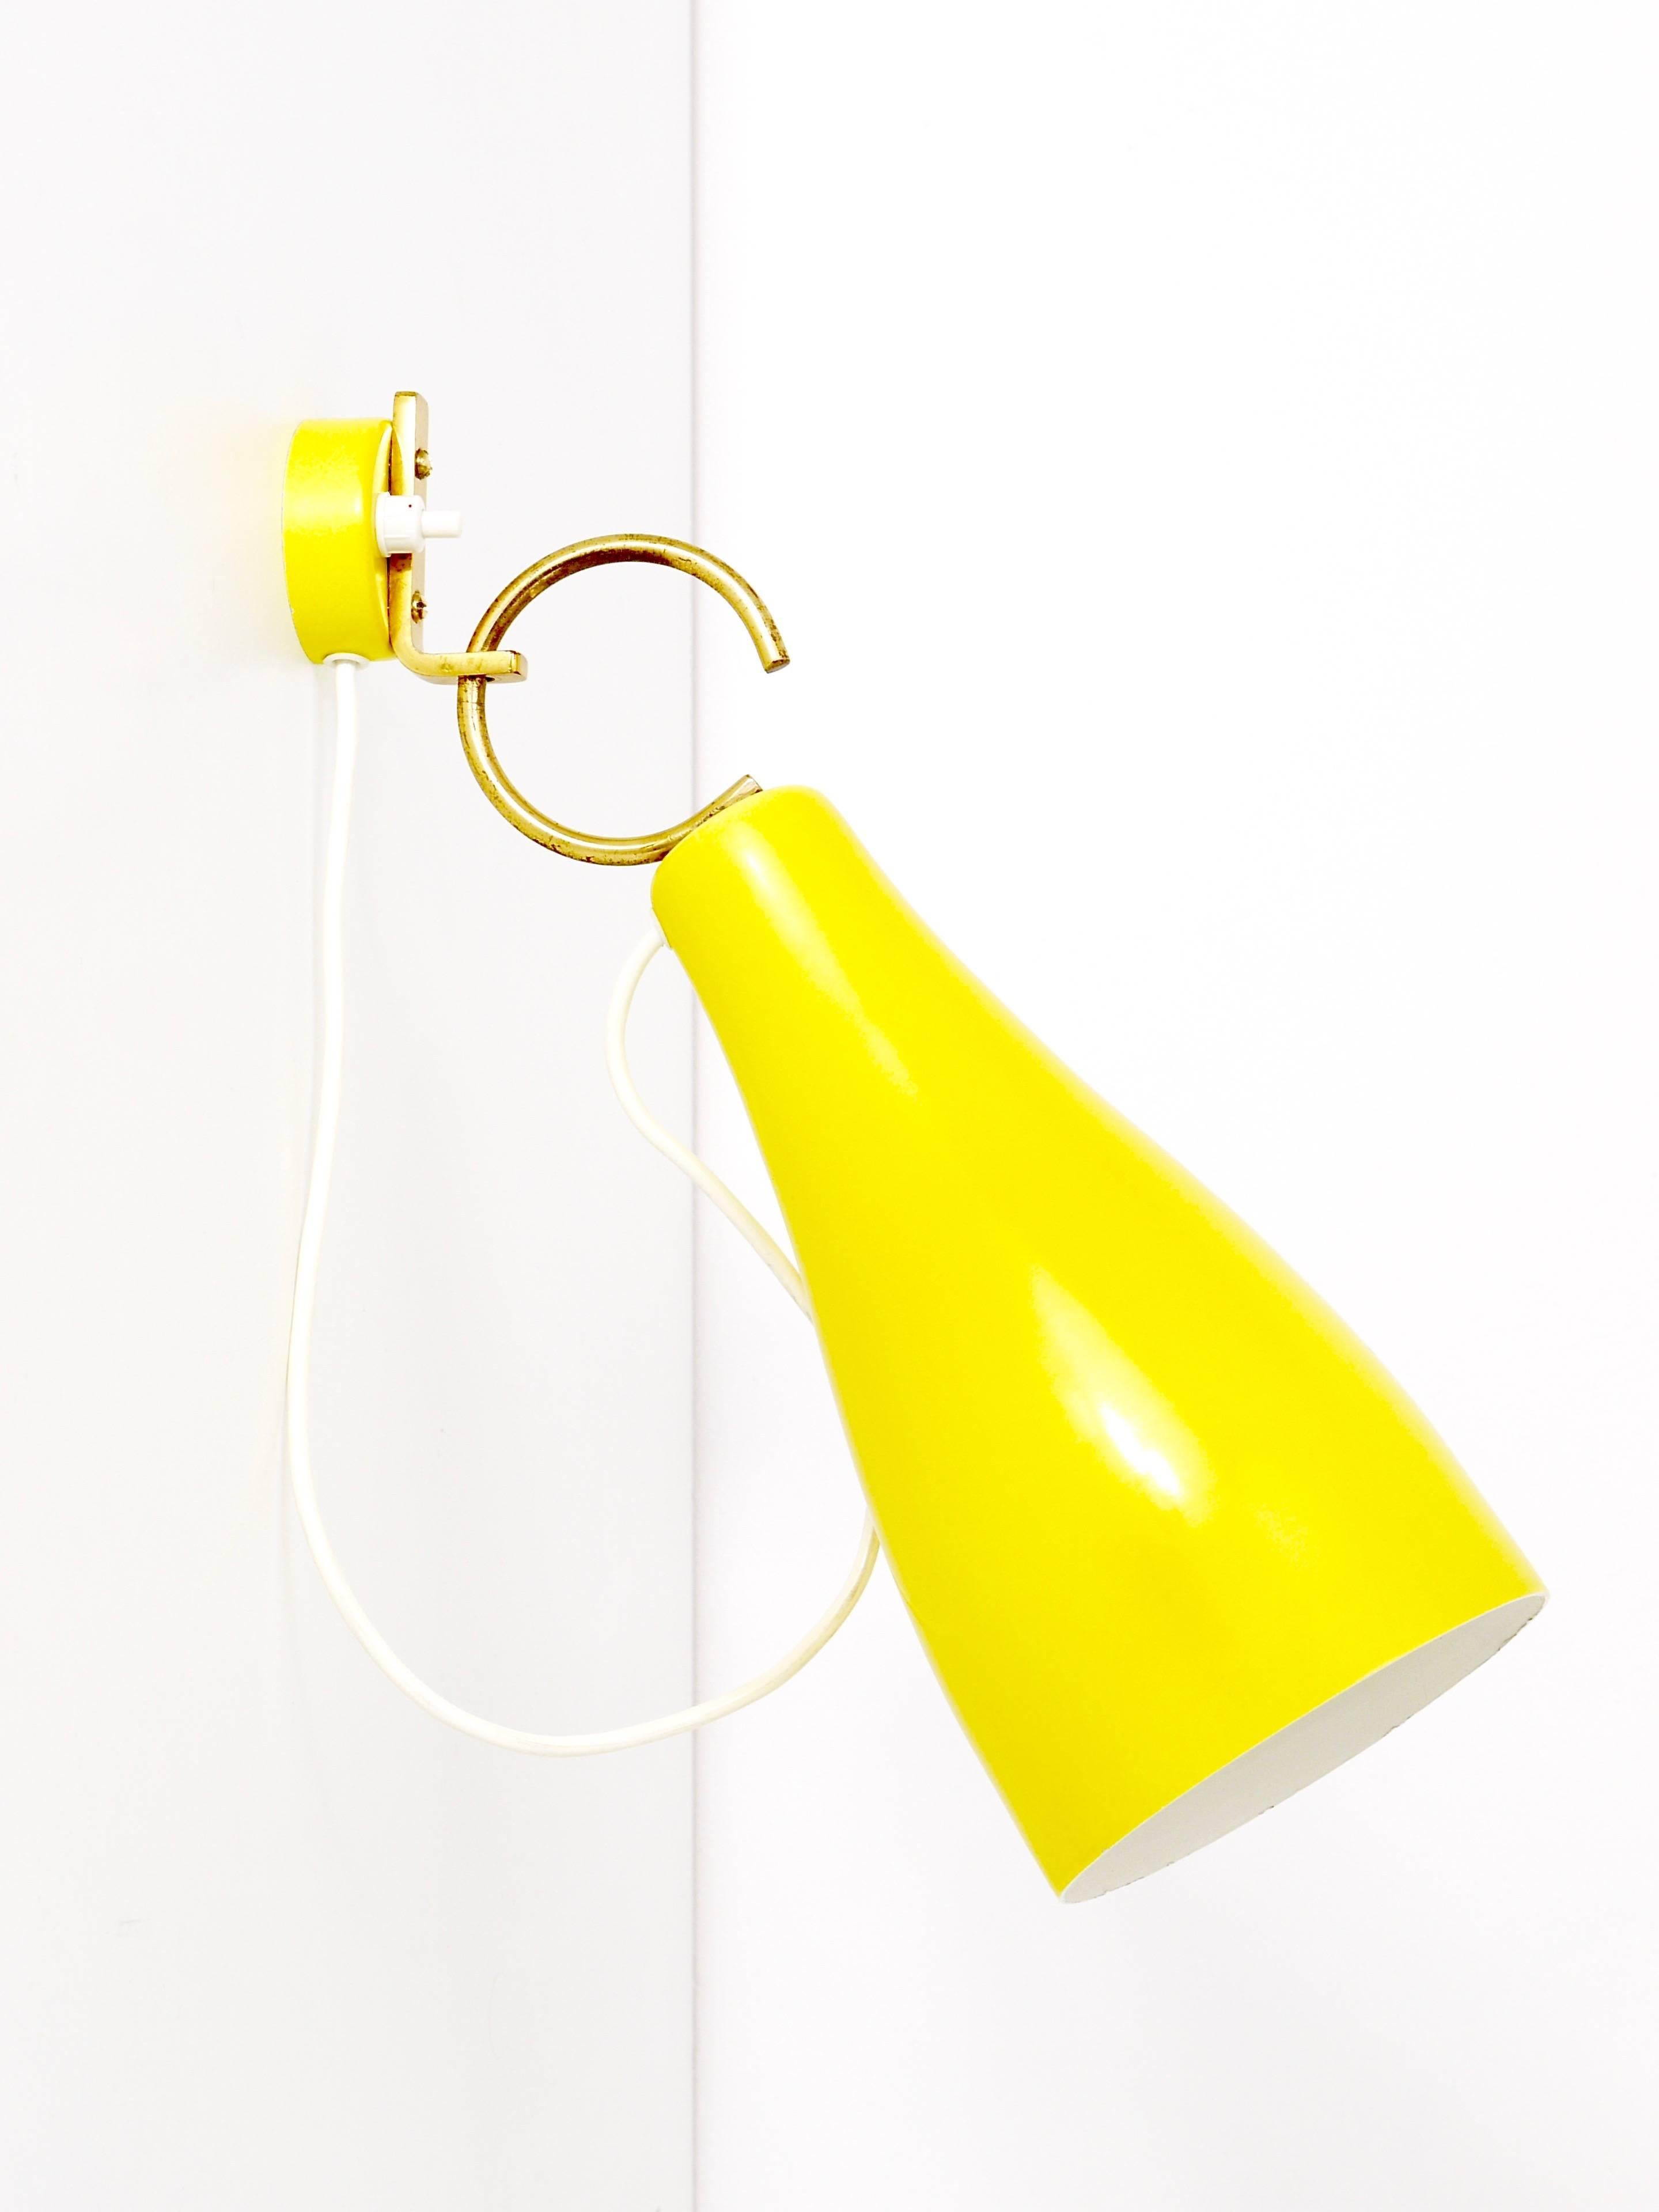 Ein Paar schöner gelber Wandleuchten aus den 1950er Jahren, hergestellt von J.T:. Kalmar Wien, Österreich. Die Lampenschirme sind an einem runden Haken befestigt und im Winkel verstellbar. Beeindruckende und seltene österreichische Leuchten in sehr